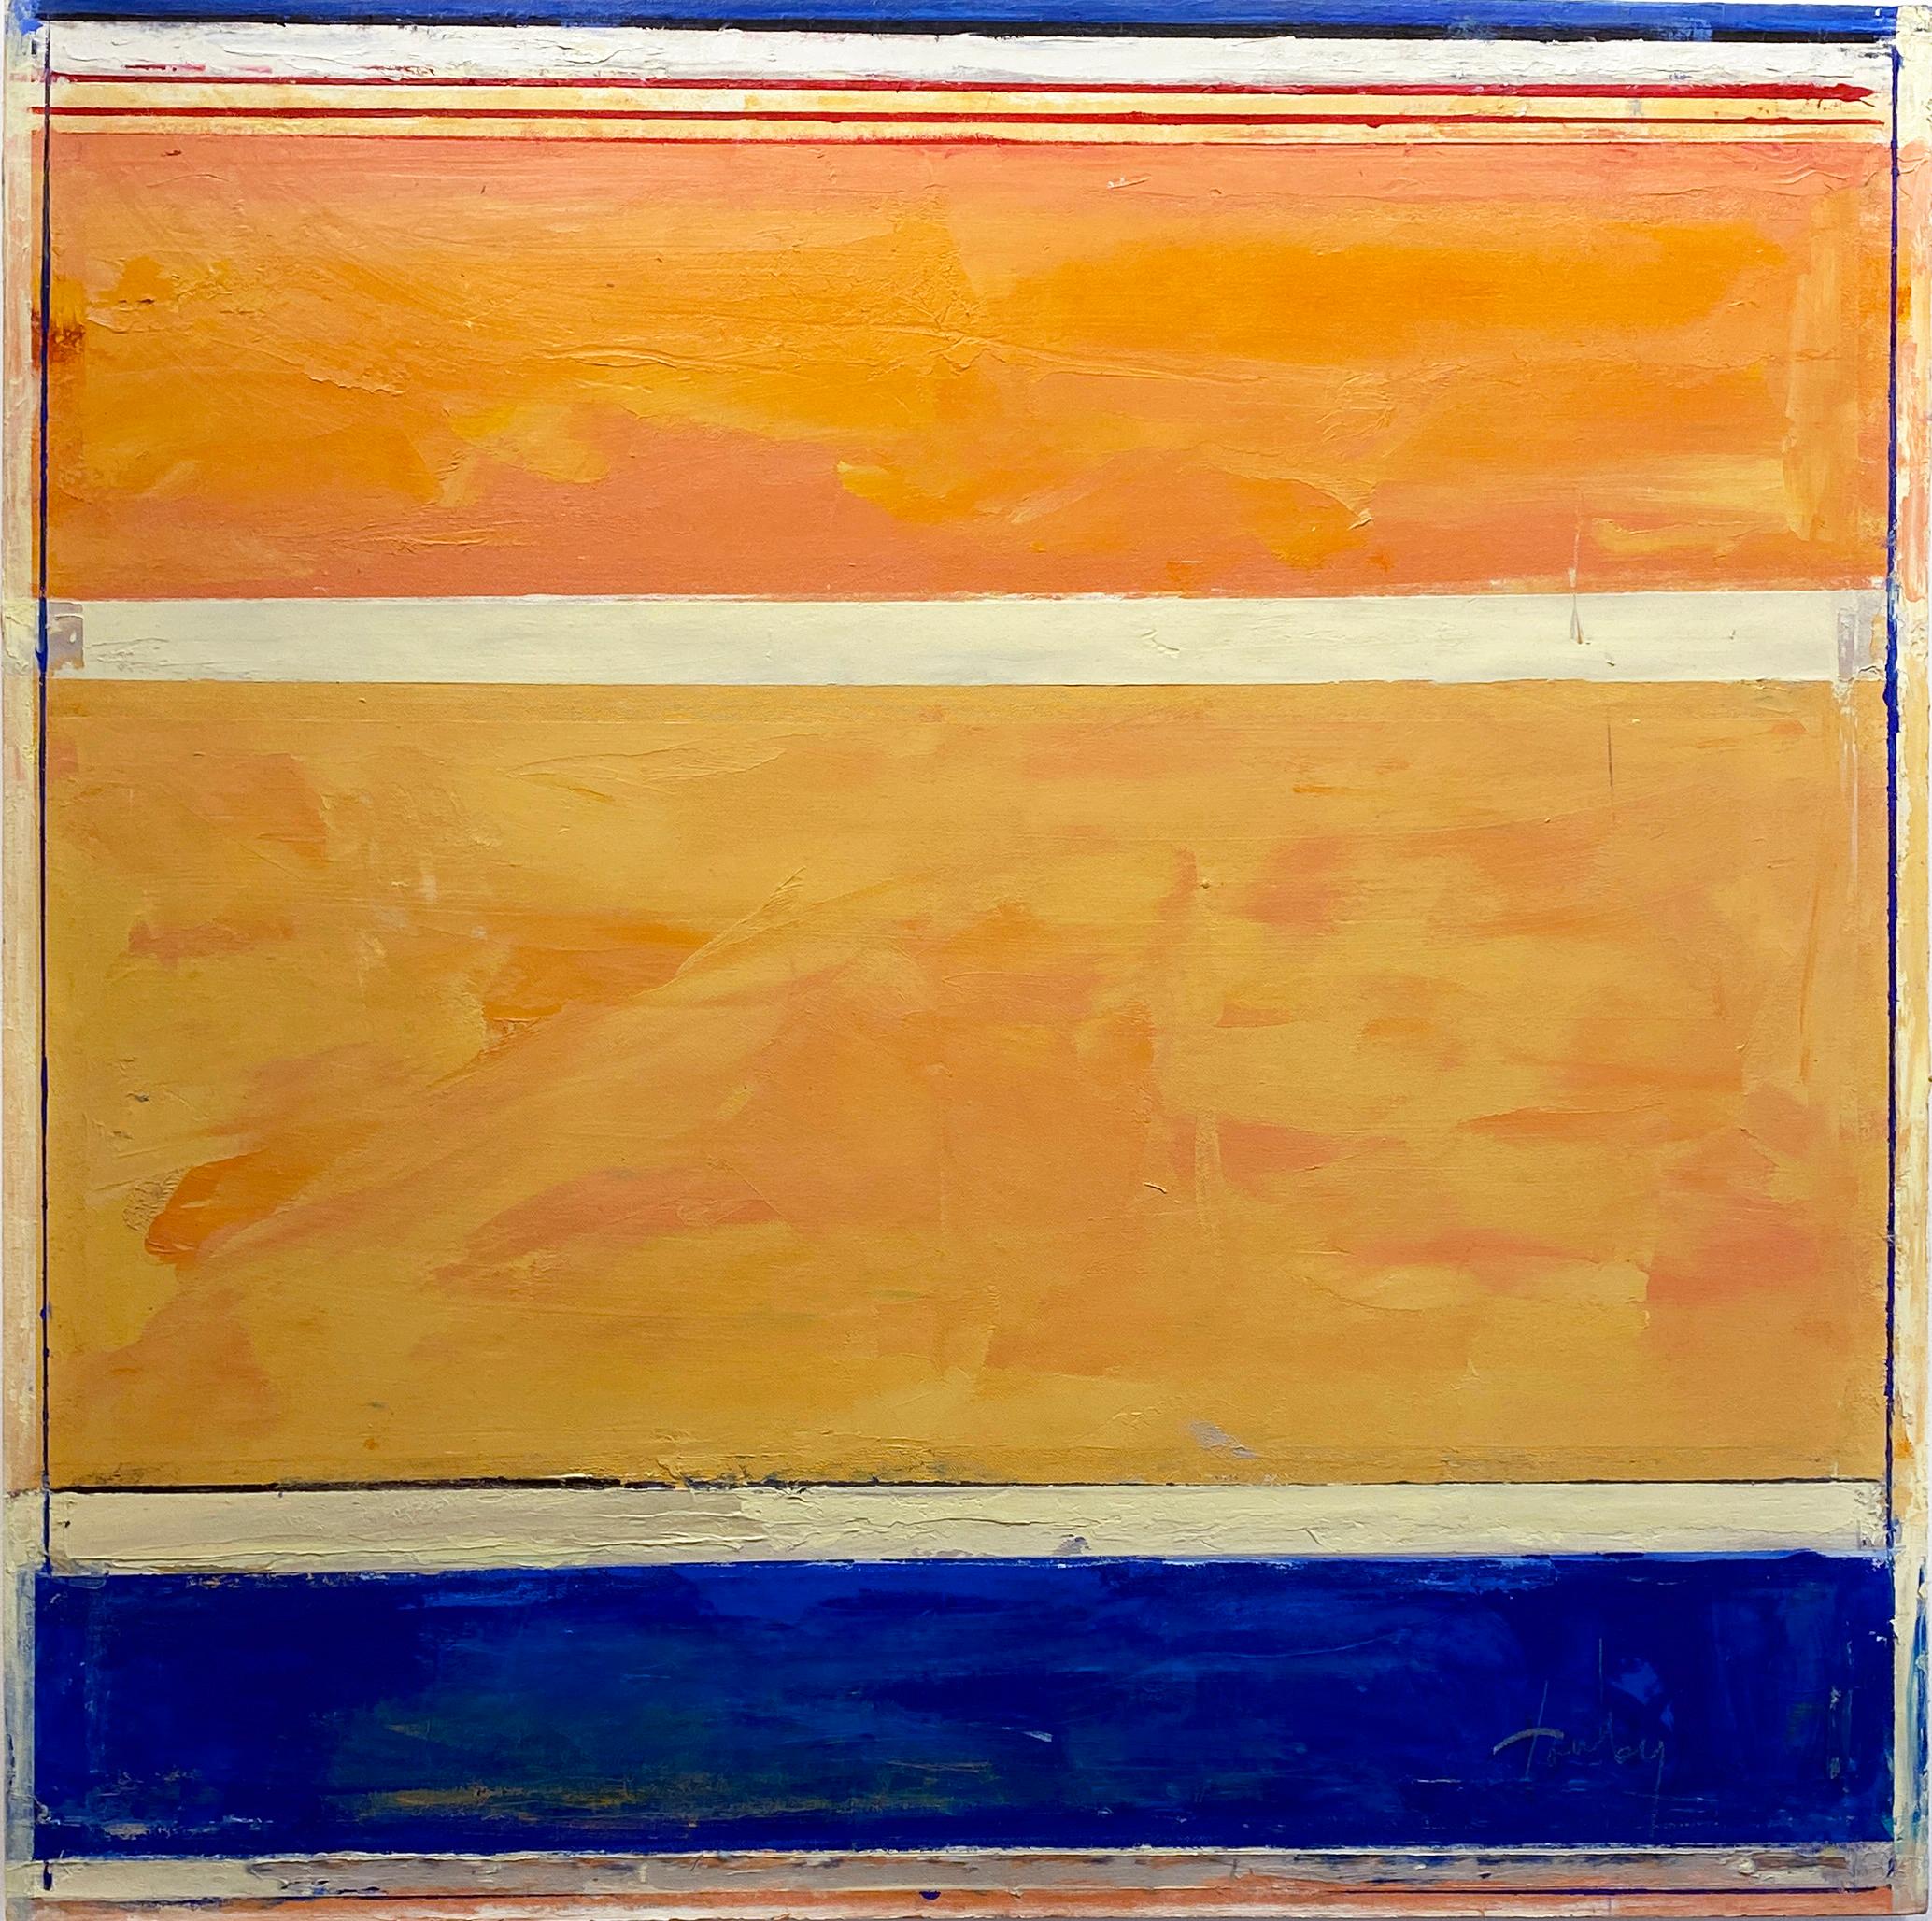 "Tauben 312" von Linda Touby, um 2010. Öl und Wachs auf Leinwand, 36 x 36 Zoll. Dieses Gemälde zeigt strukturierte Streifen aus leuchtenden Pigmenten, darunter Gelb, Orange, Blau, Schwarz und Weiß. 

Dieses wunderschöne Gemälde stammt aus Linda